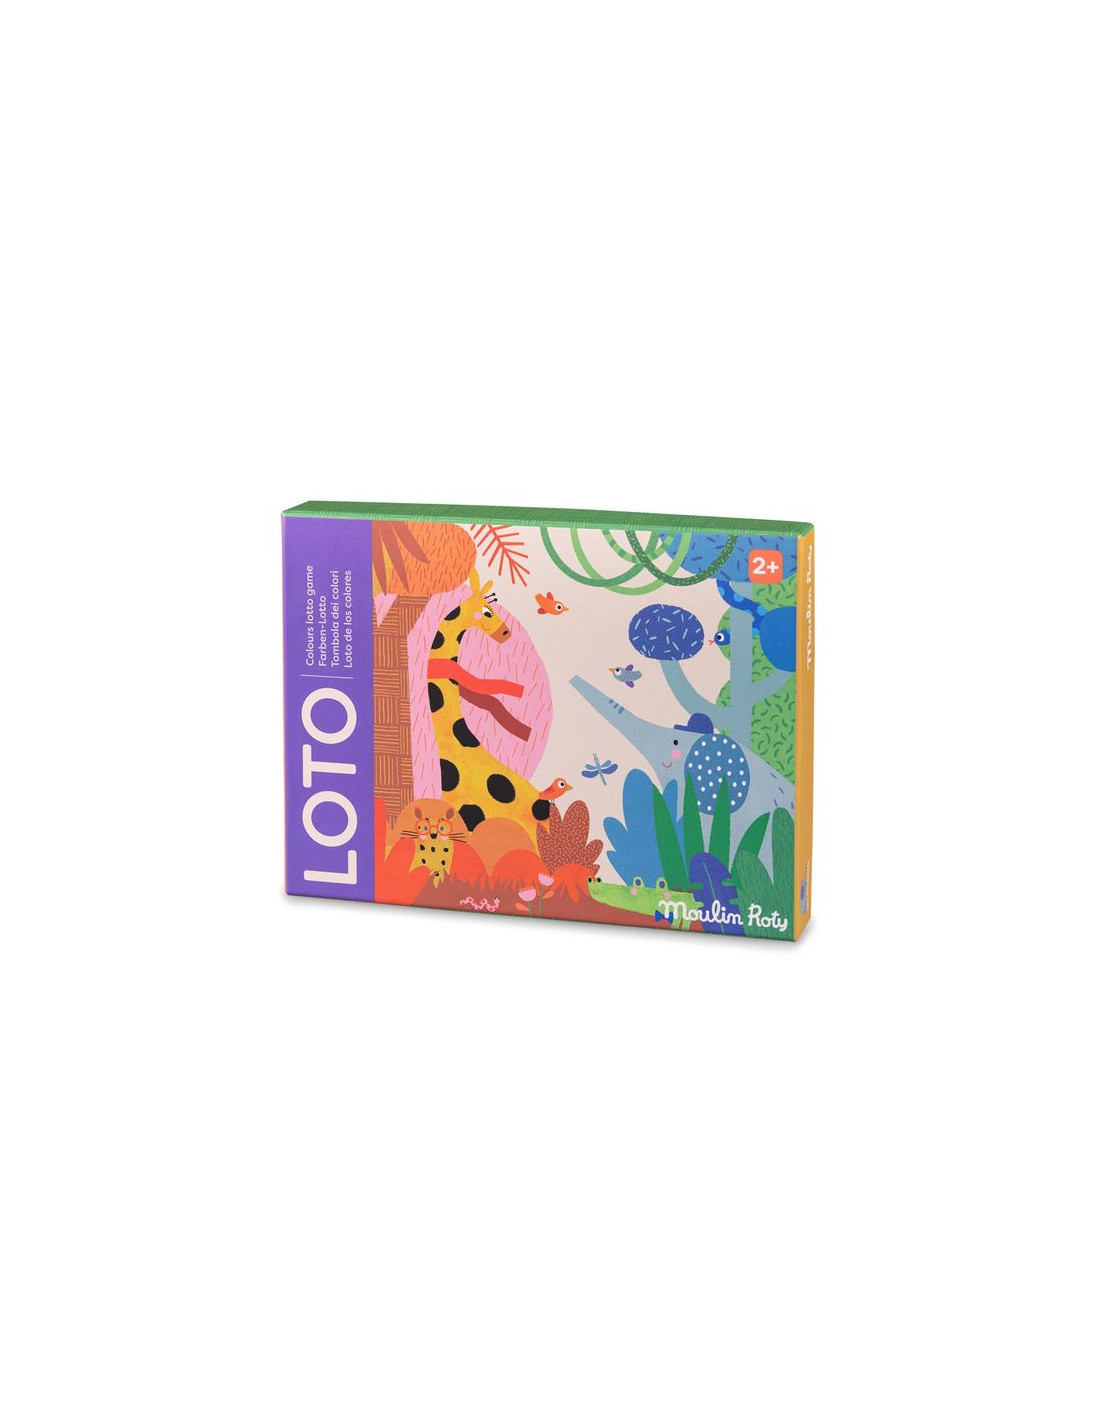 Loto Couleurs - un jeu de loto pour jouer avec les couleurs